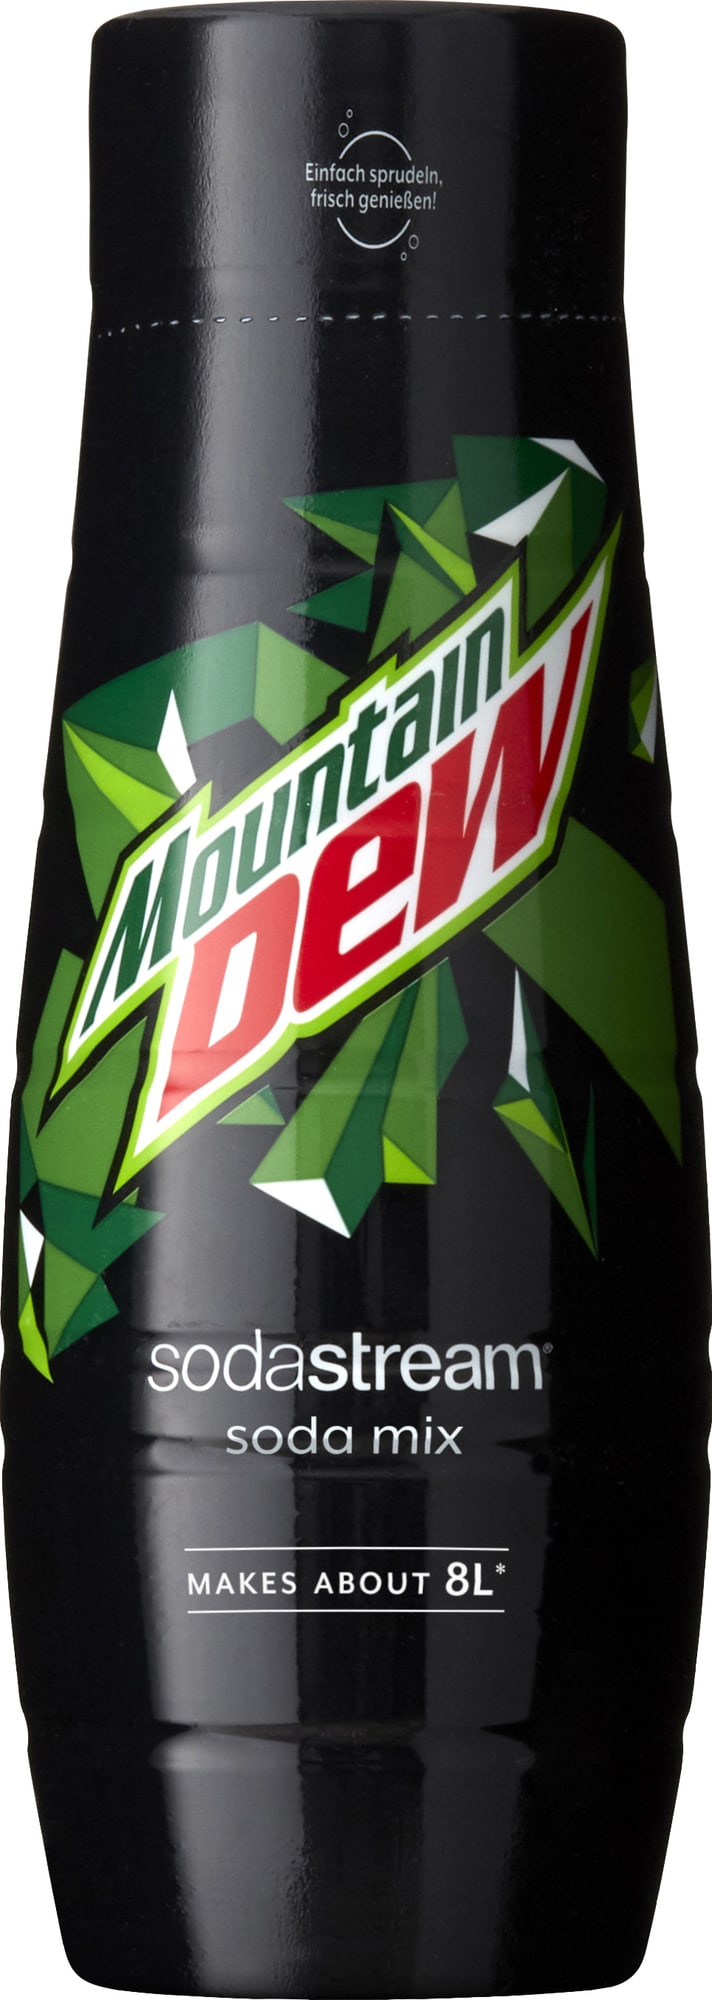 Sodastream Mountain Dew-smag 1100011770 thumbnail